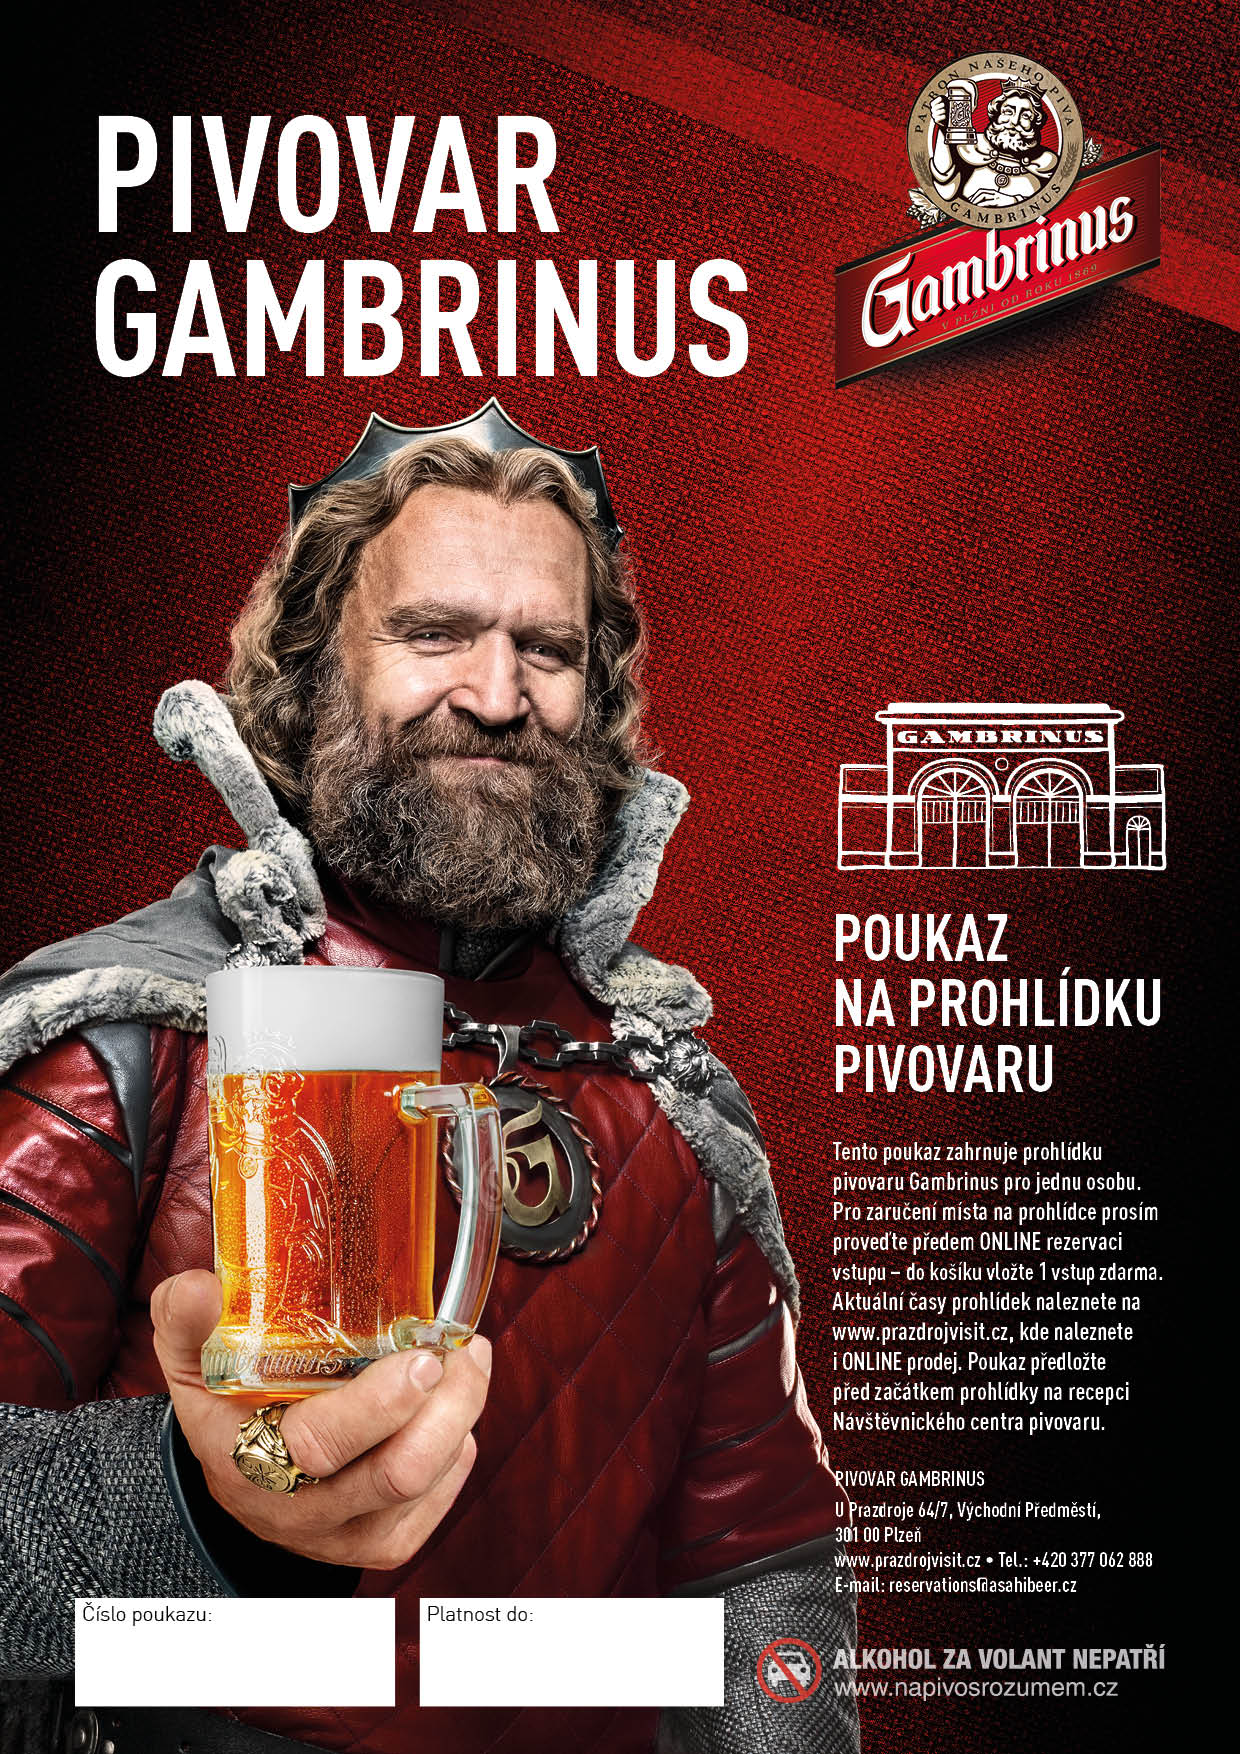 Besichtigung der Brauerei Gambrinus - tschechische Sprache